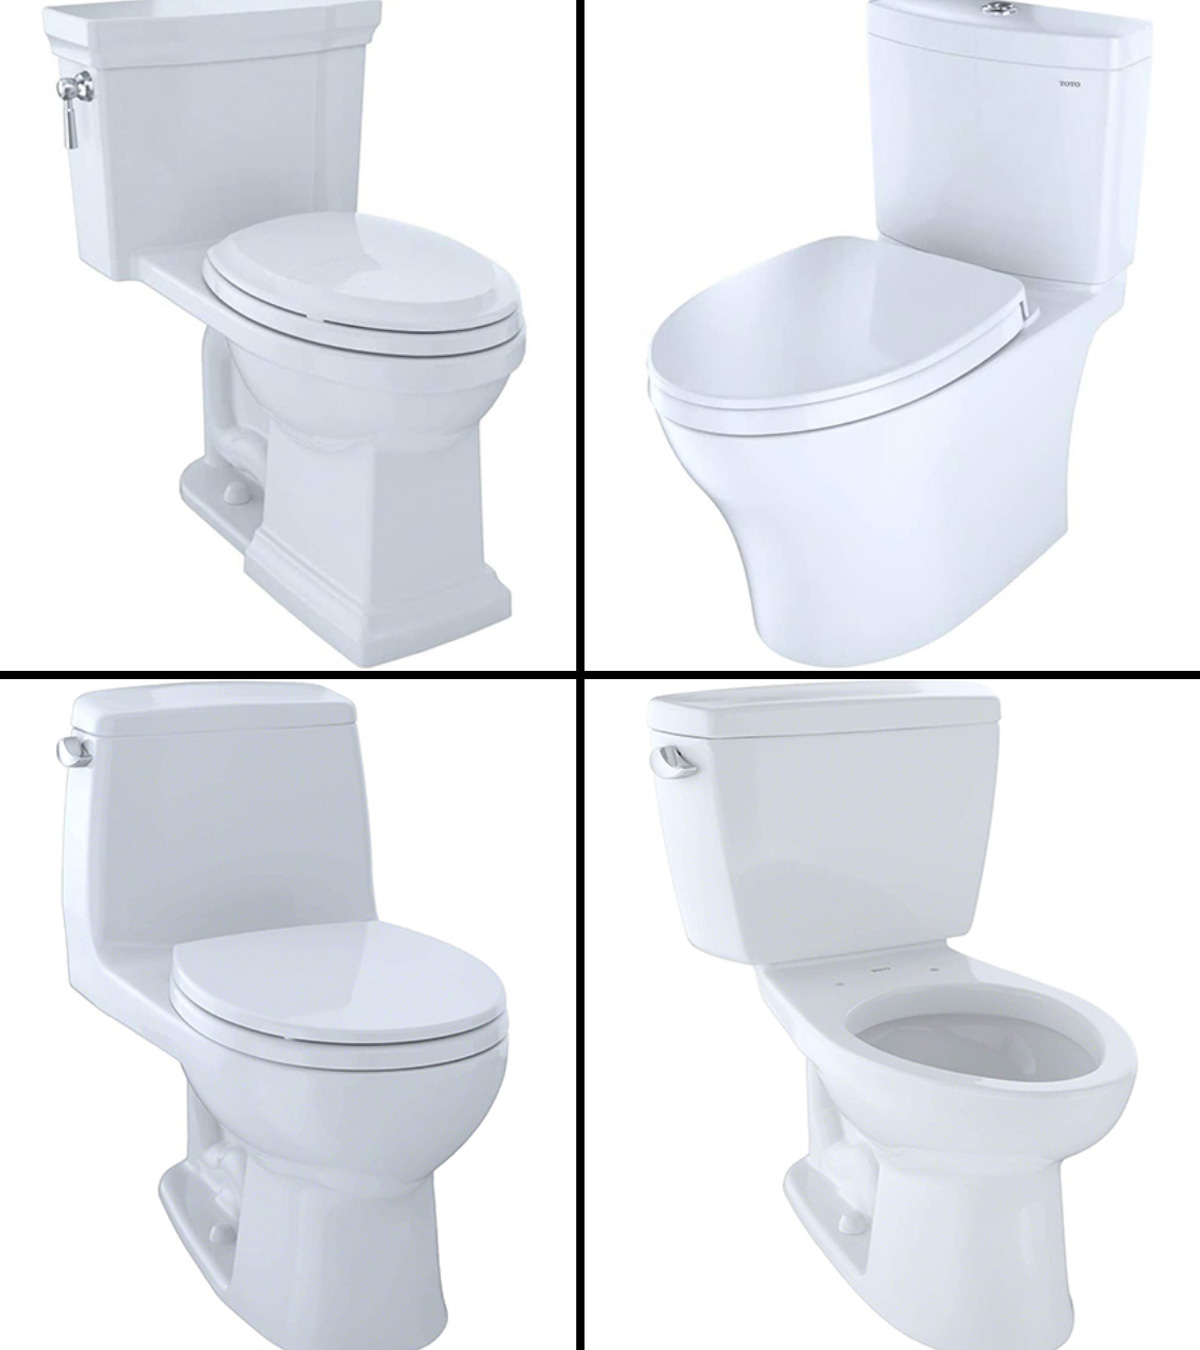 https://www.momjunction.com/wp-content/uploads/2021/04/Best-TOTO-Toilets-in.jpg